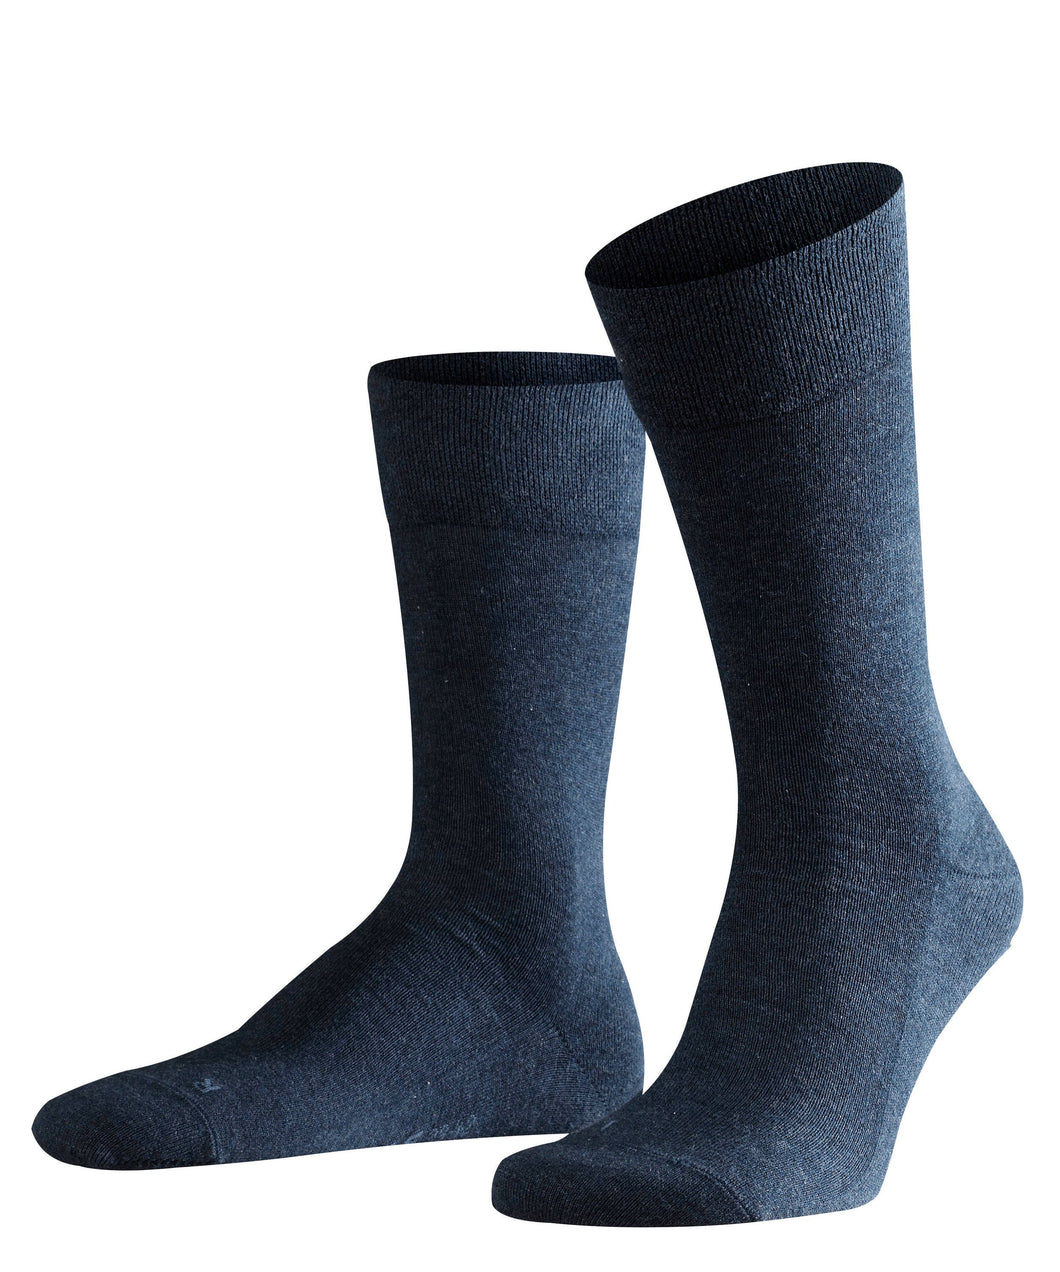 FALKE LONDON Sensitive Socks Navy Melange